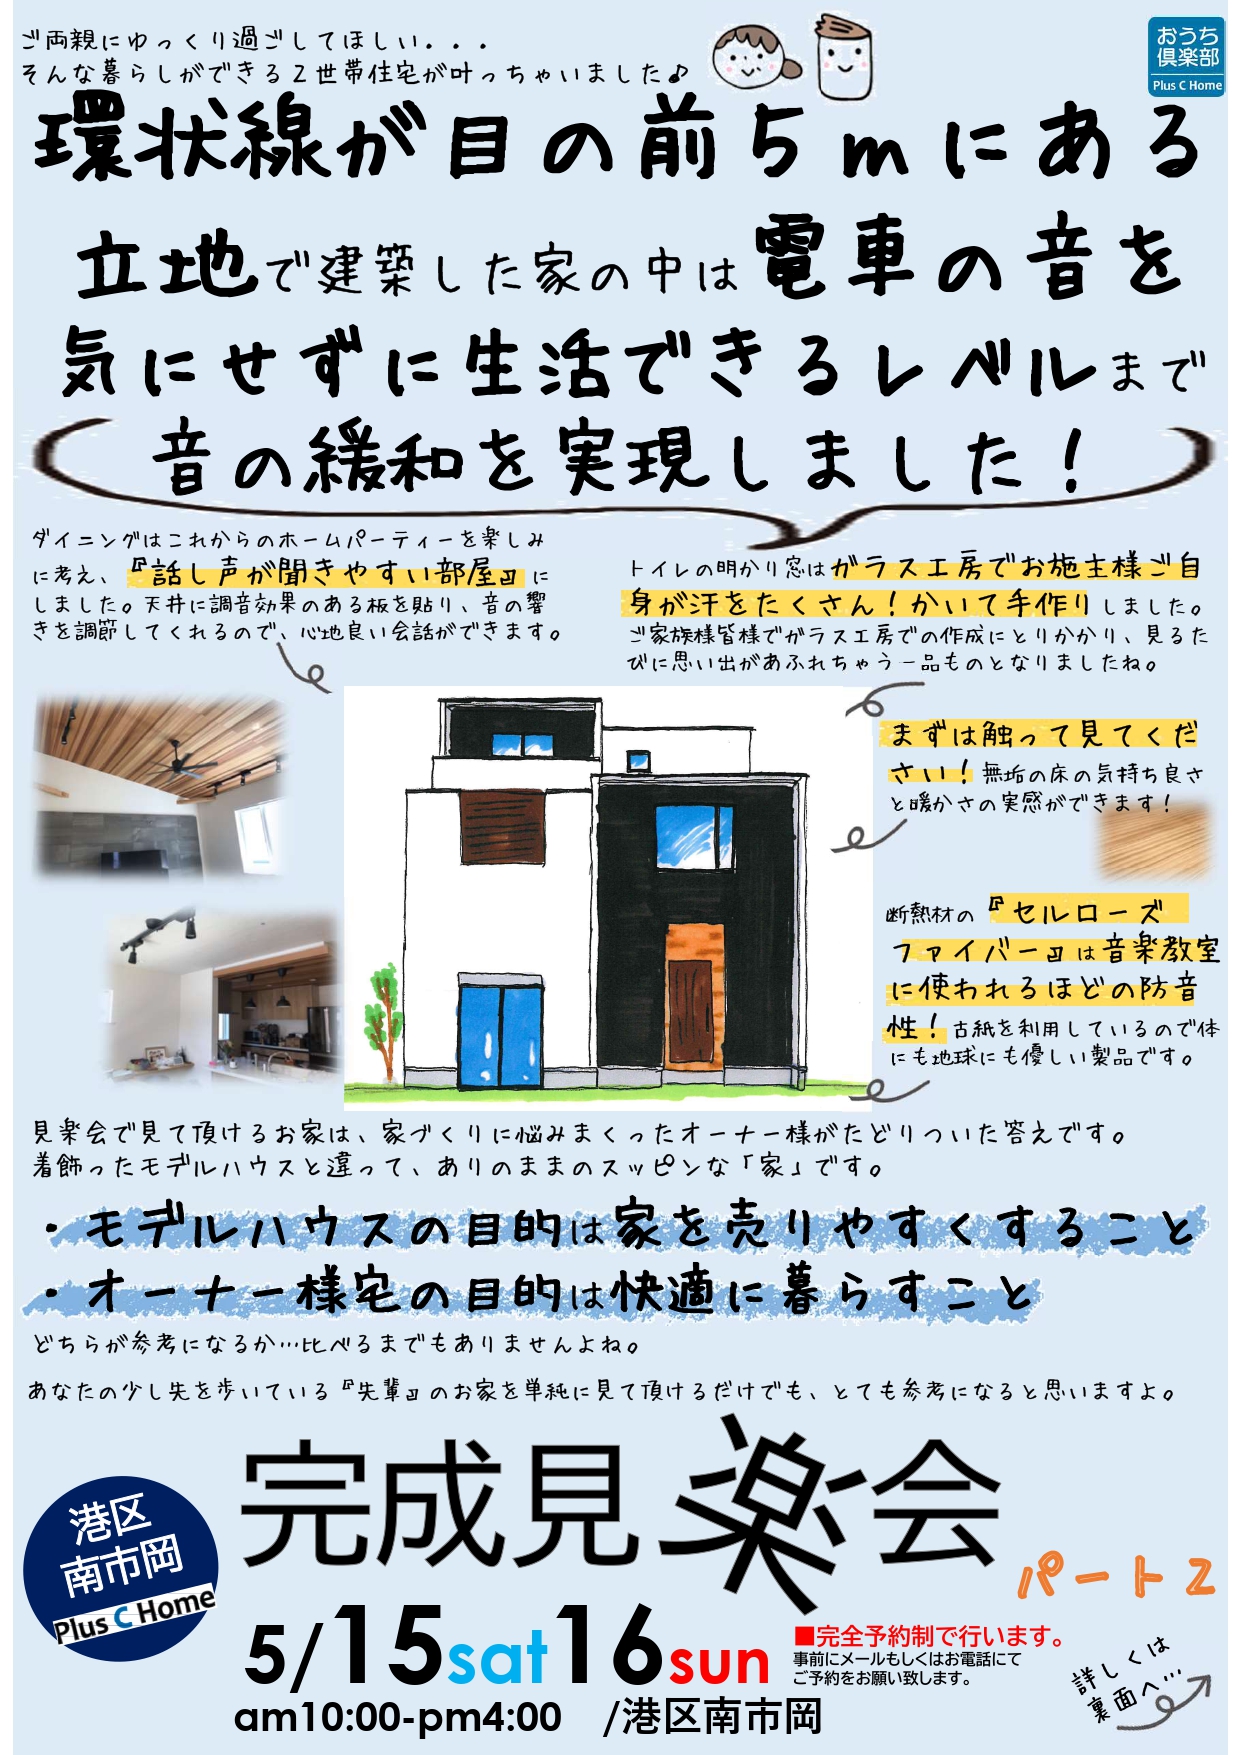 大阪市鶴見区で高断熱・高気密住宅を建てております工務店Plus C Homeが港区南市岡で完成見学会を開催します♪